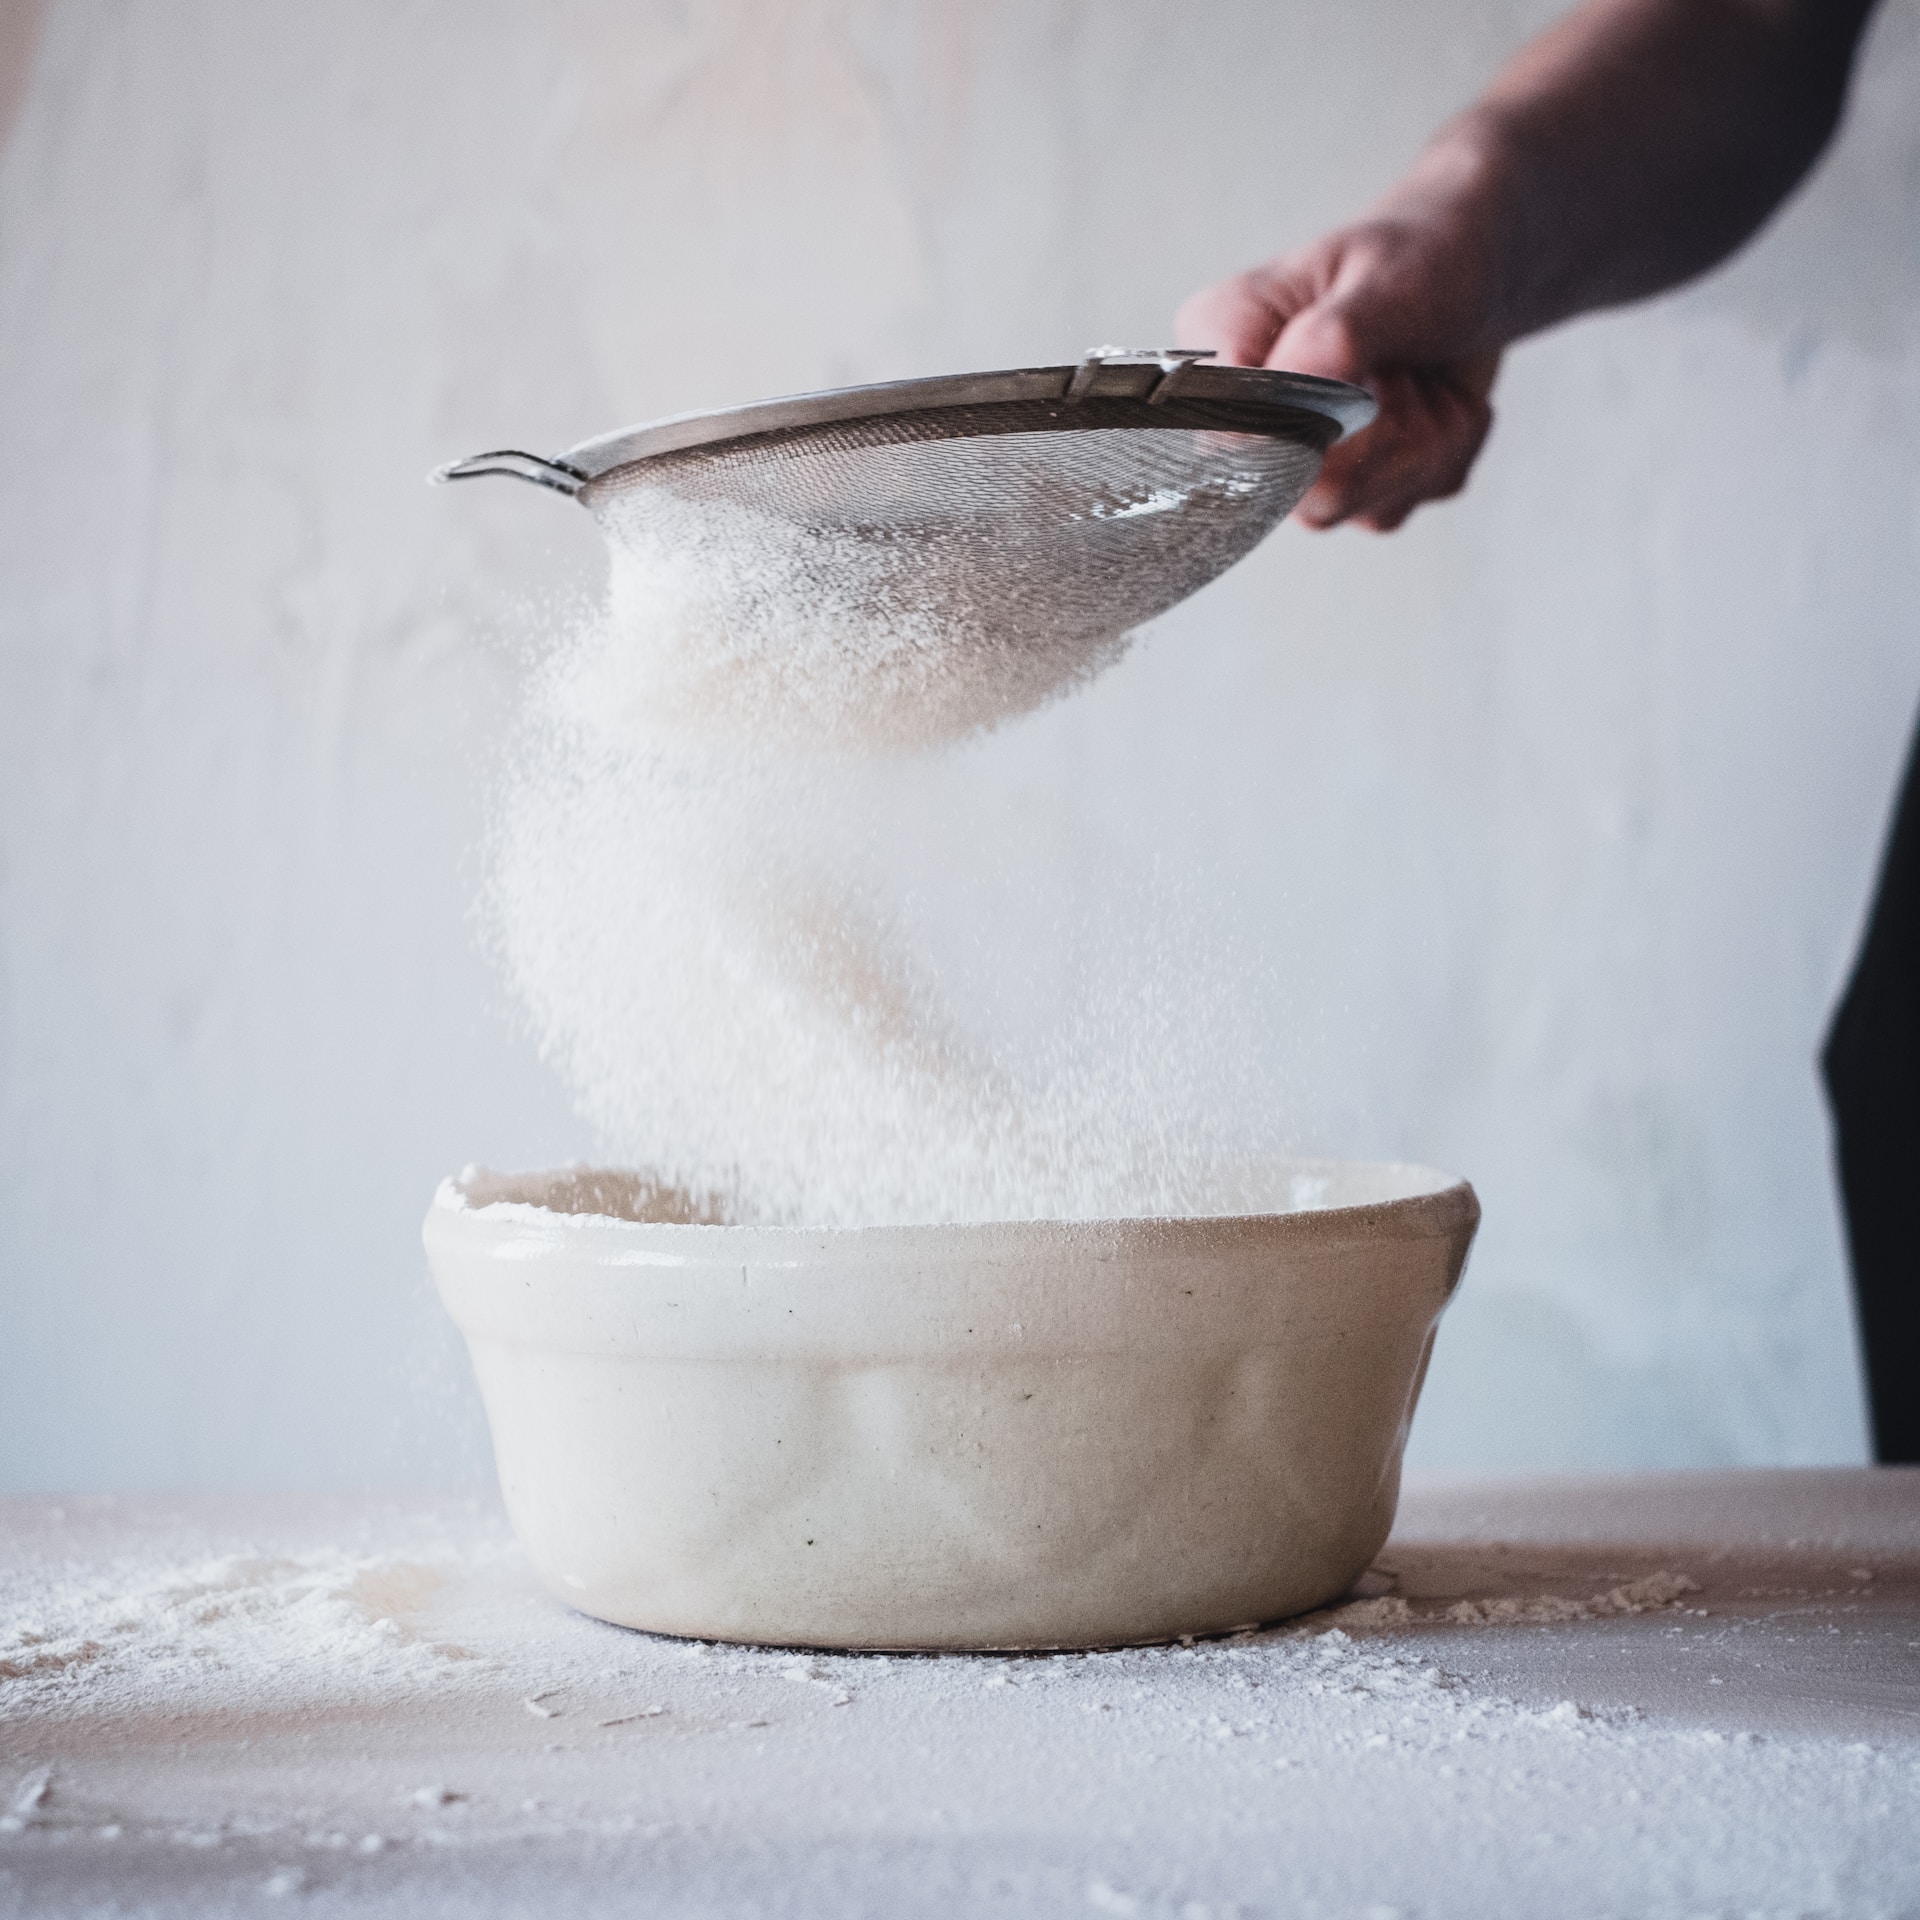 Azúcar moreno y azúcar blanco: ¿Hay de verdad diferencias?